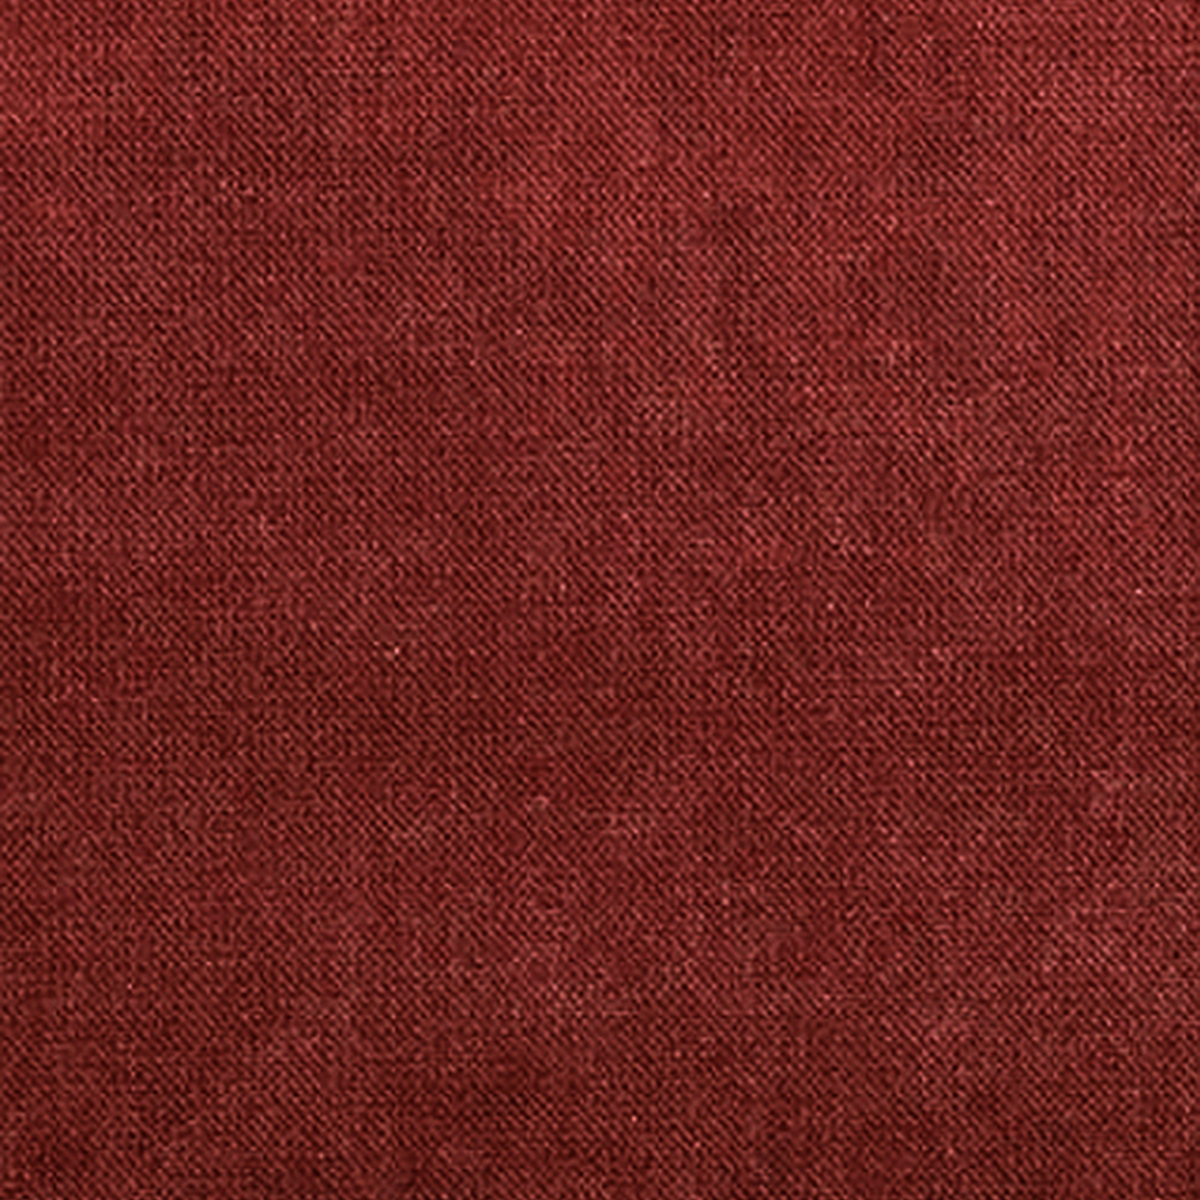 Fabric 20 - Plain velvet Red